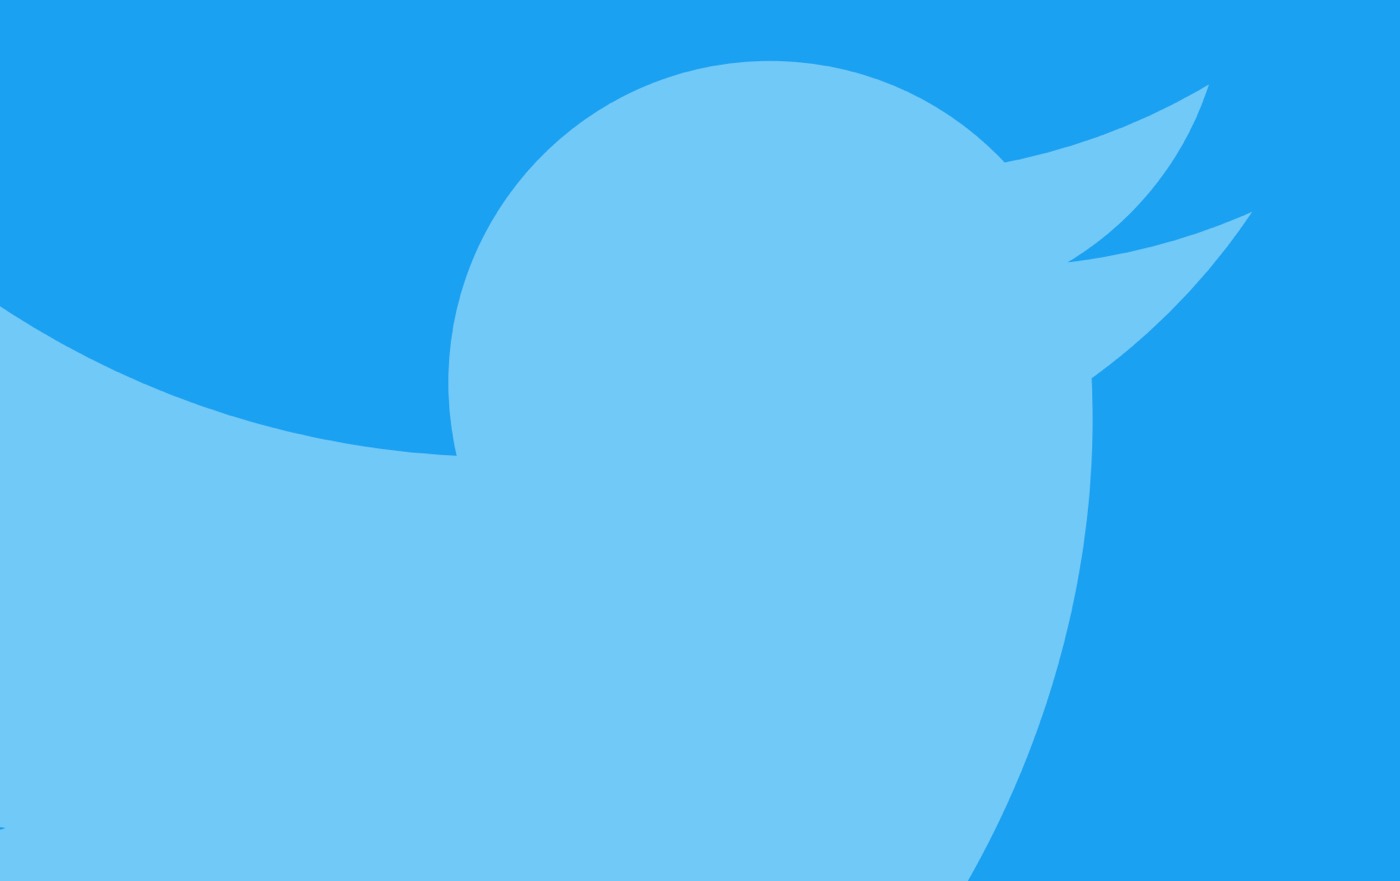 Twitterの日間アクティブユーザー数は1億8,700万人に